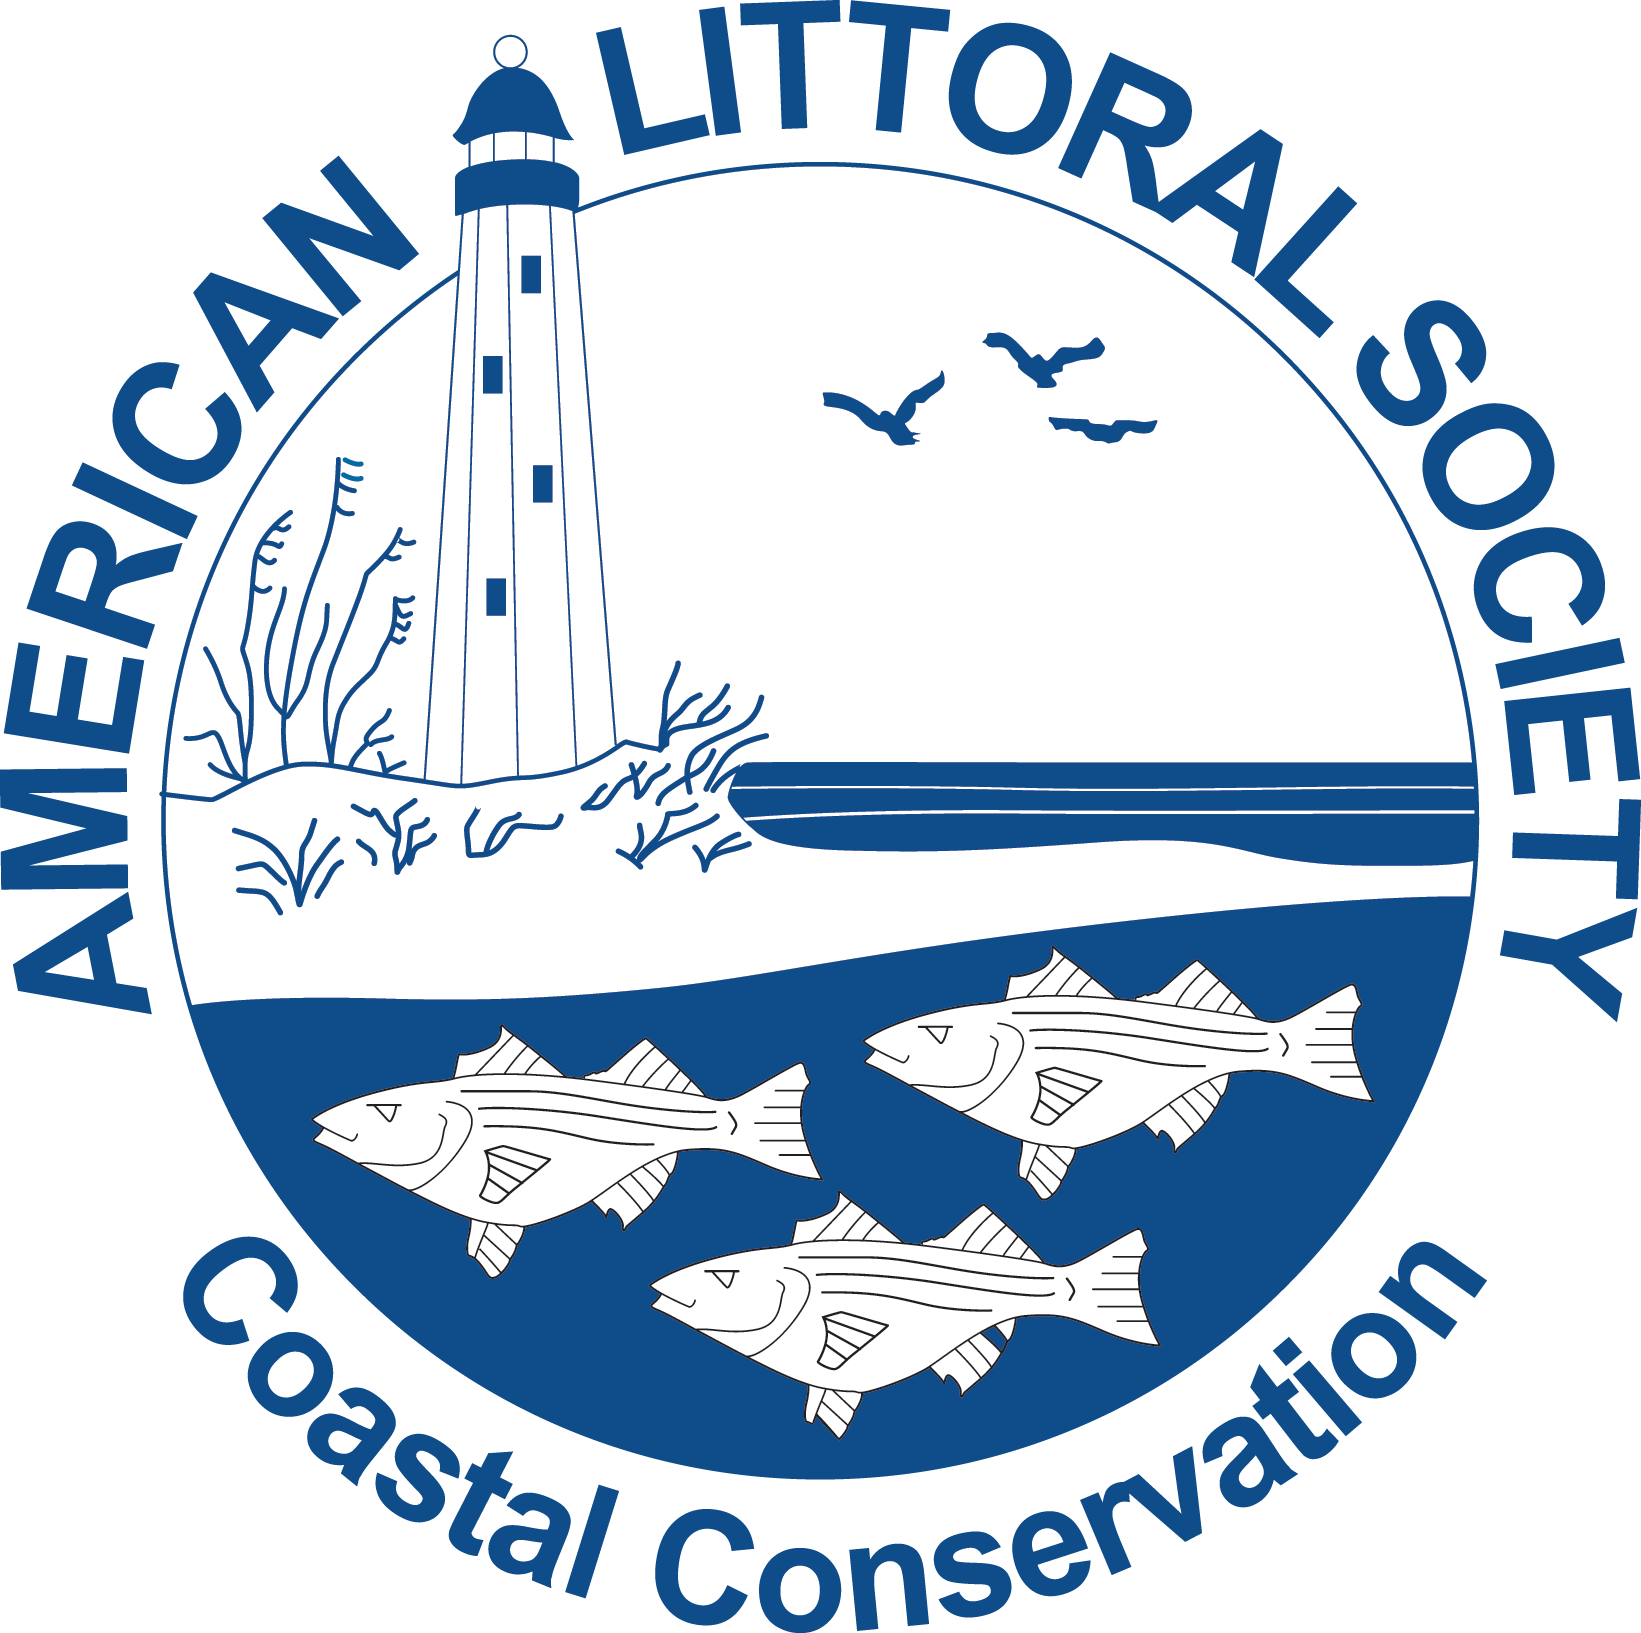 Coastal Education Internship/Marine Fish Tagging Program Internship